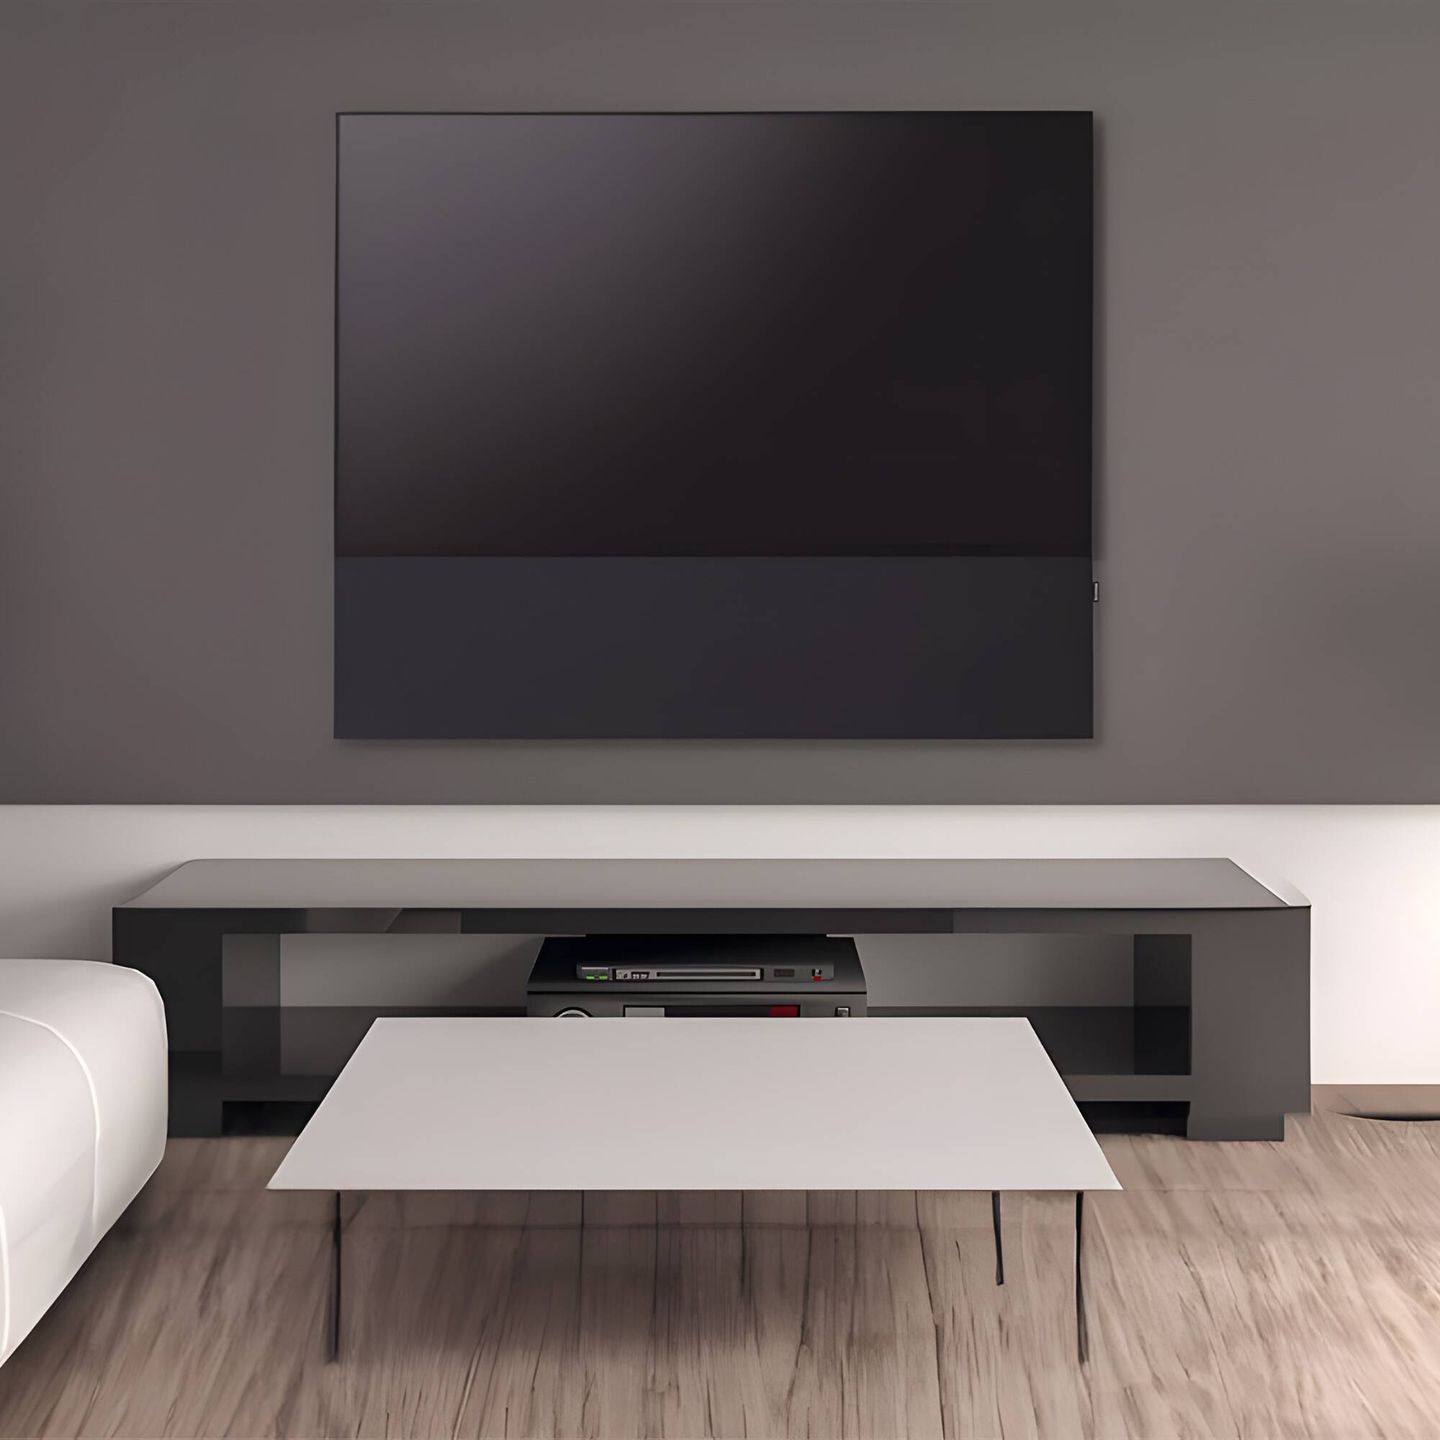 El Altavoz HiFi Canvas se integra en la parte inferior de cualquier televisión proporcionando un look conjunto más sofisticado. (Cortesía)